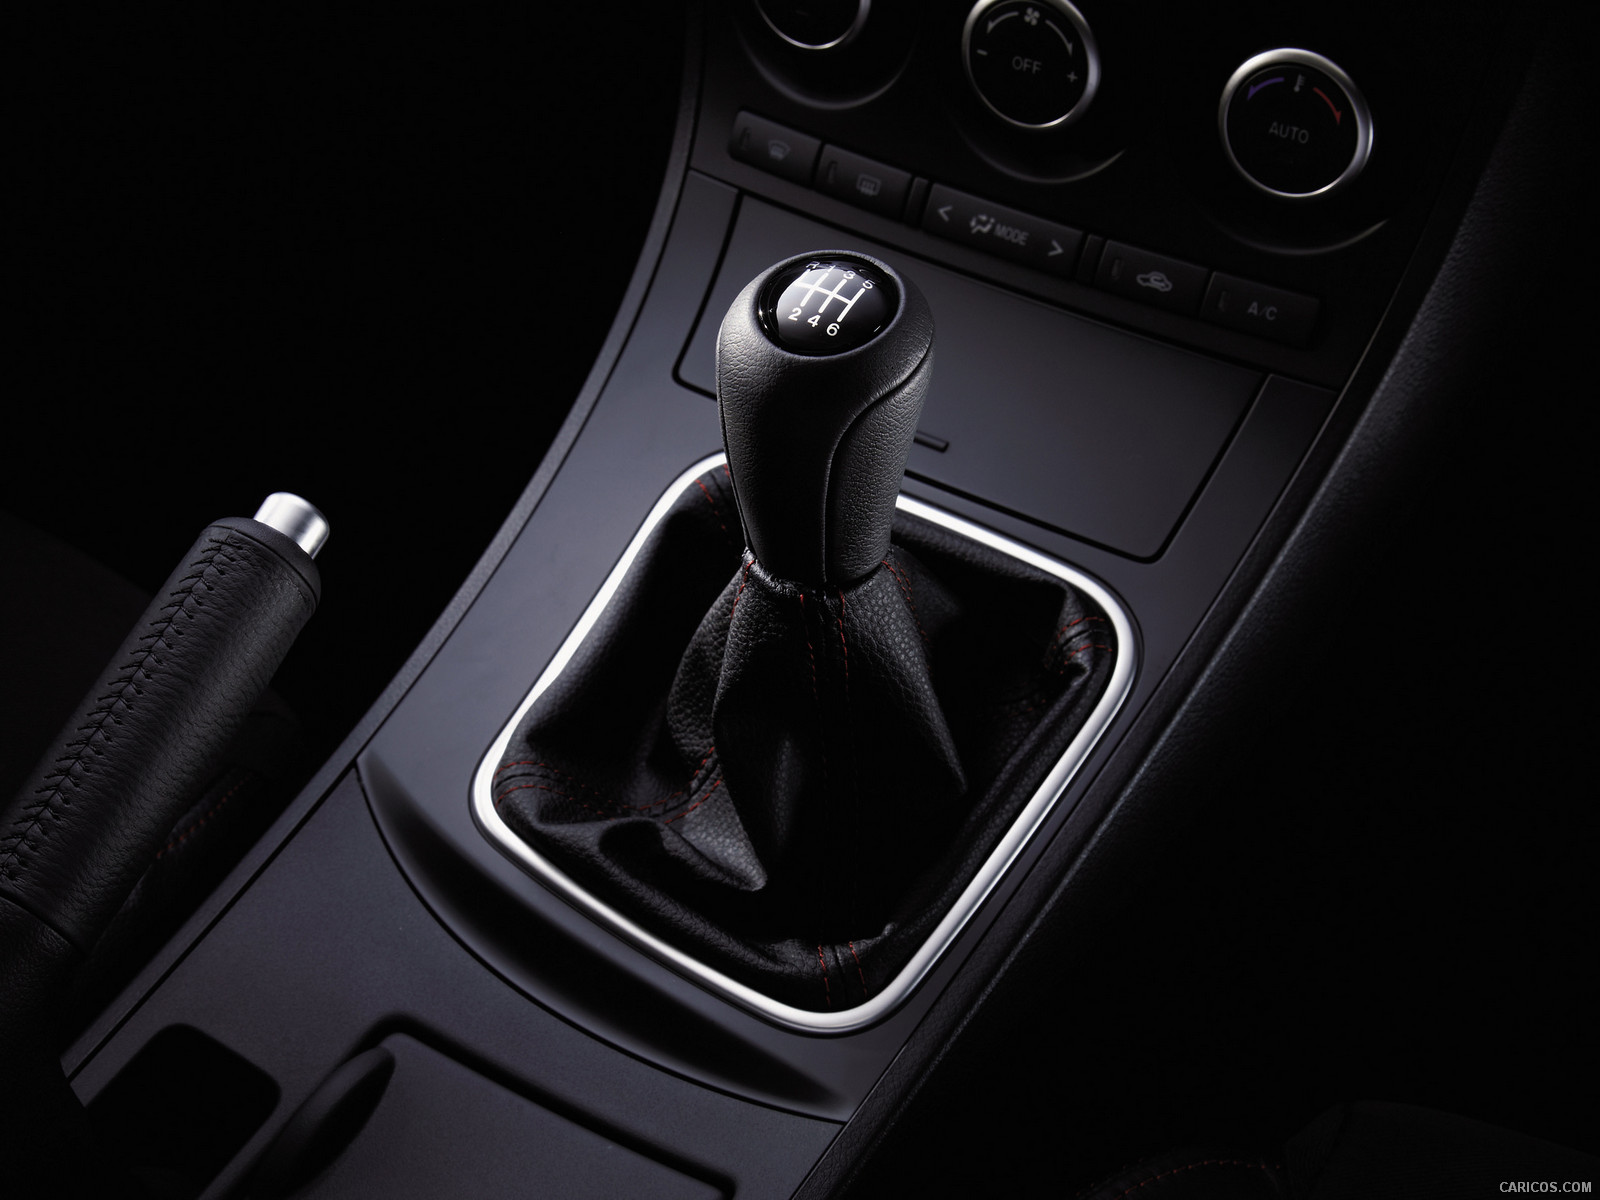 2012 Mazda MazdaSpeed 3 Shift Knob - | Caricos